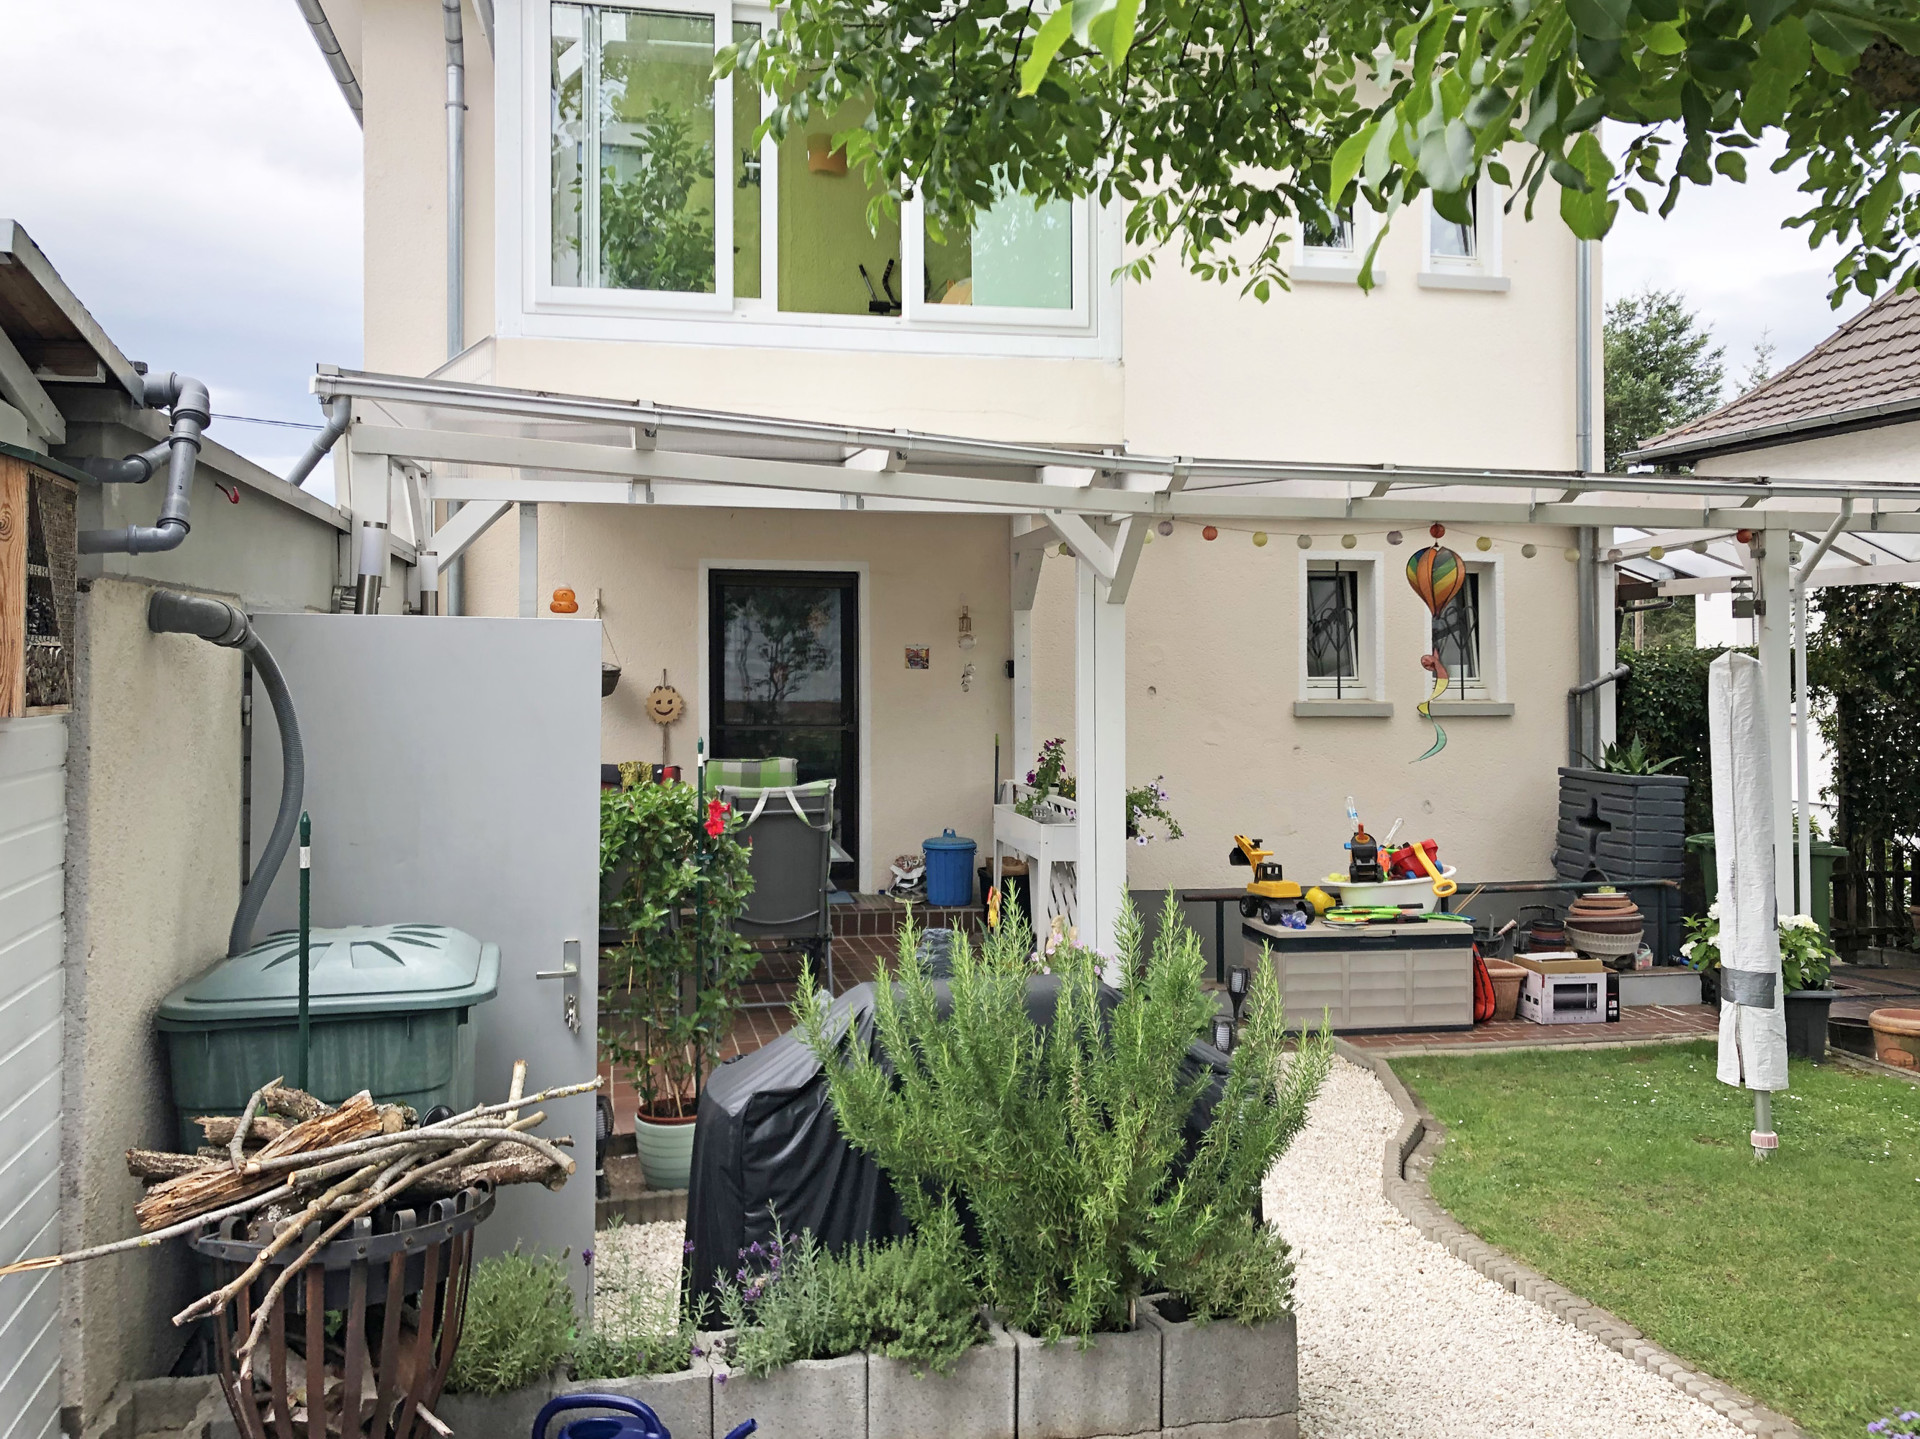 REDUZIERT – Top-gepflegtes, renoviertes Einfamilienhaus in bevorzugter Wohnlage von Unkel!